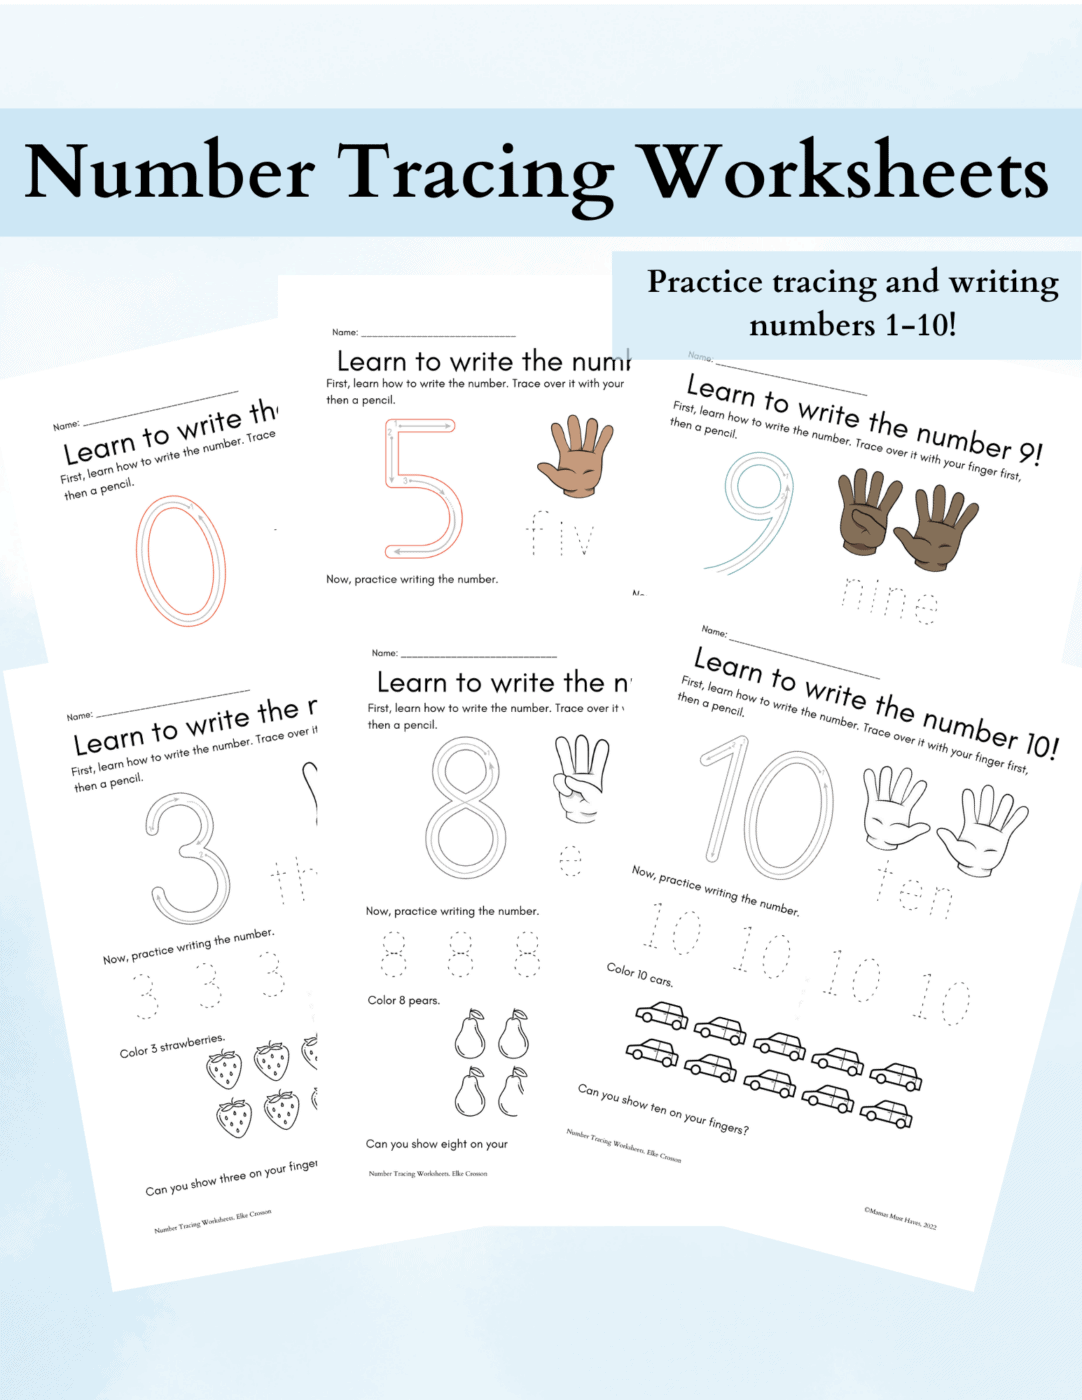 Number tracing worksheets printable